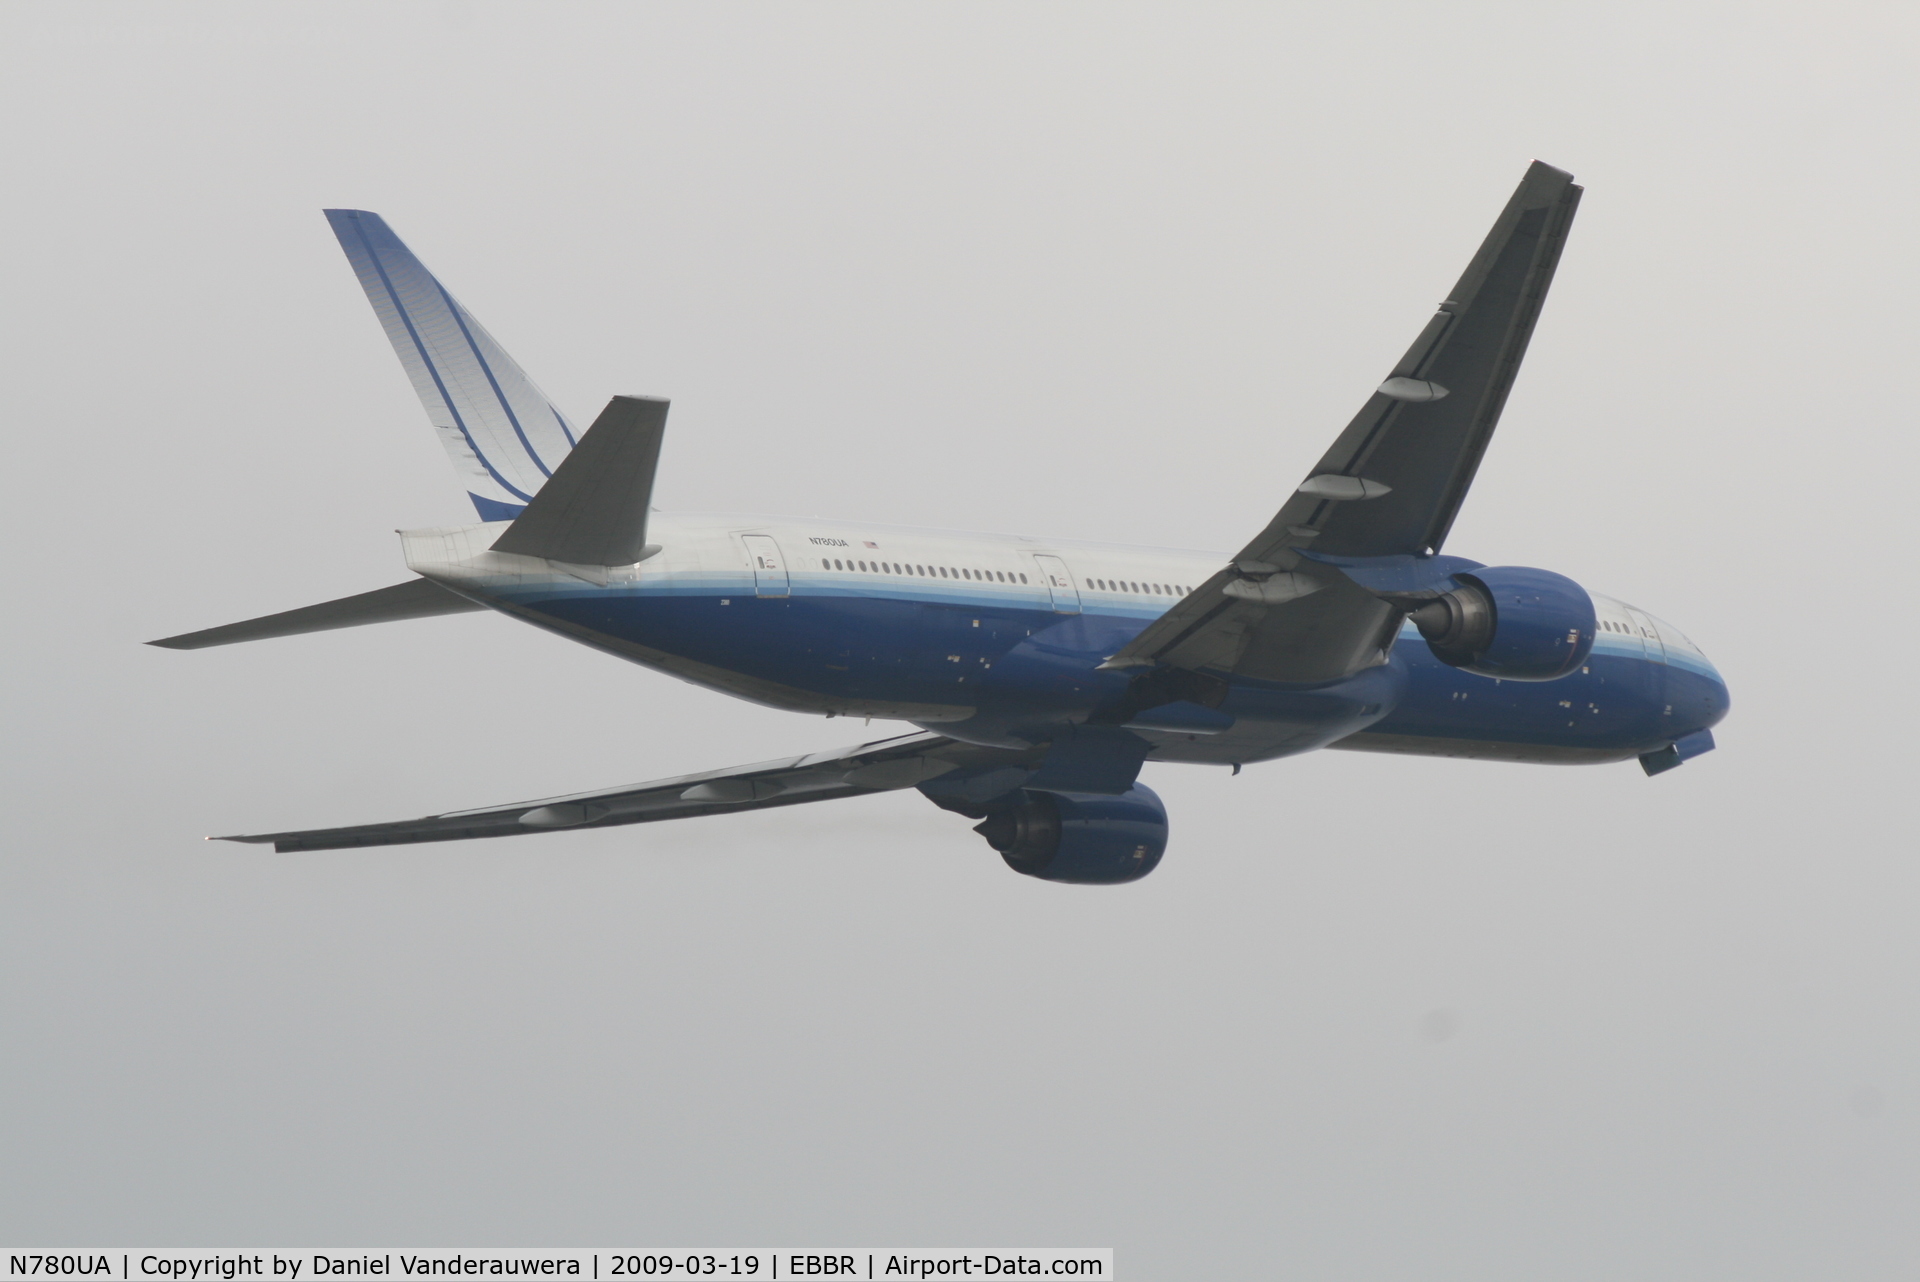 N780UA, 1996 Boeing 777-222 C/N 26944, Flight UA951 is taking off from RWY 07R